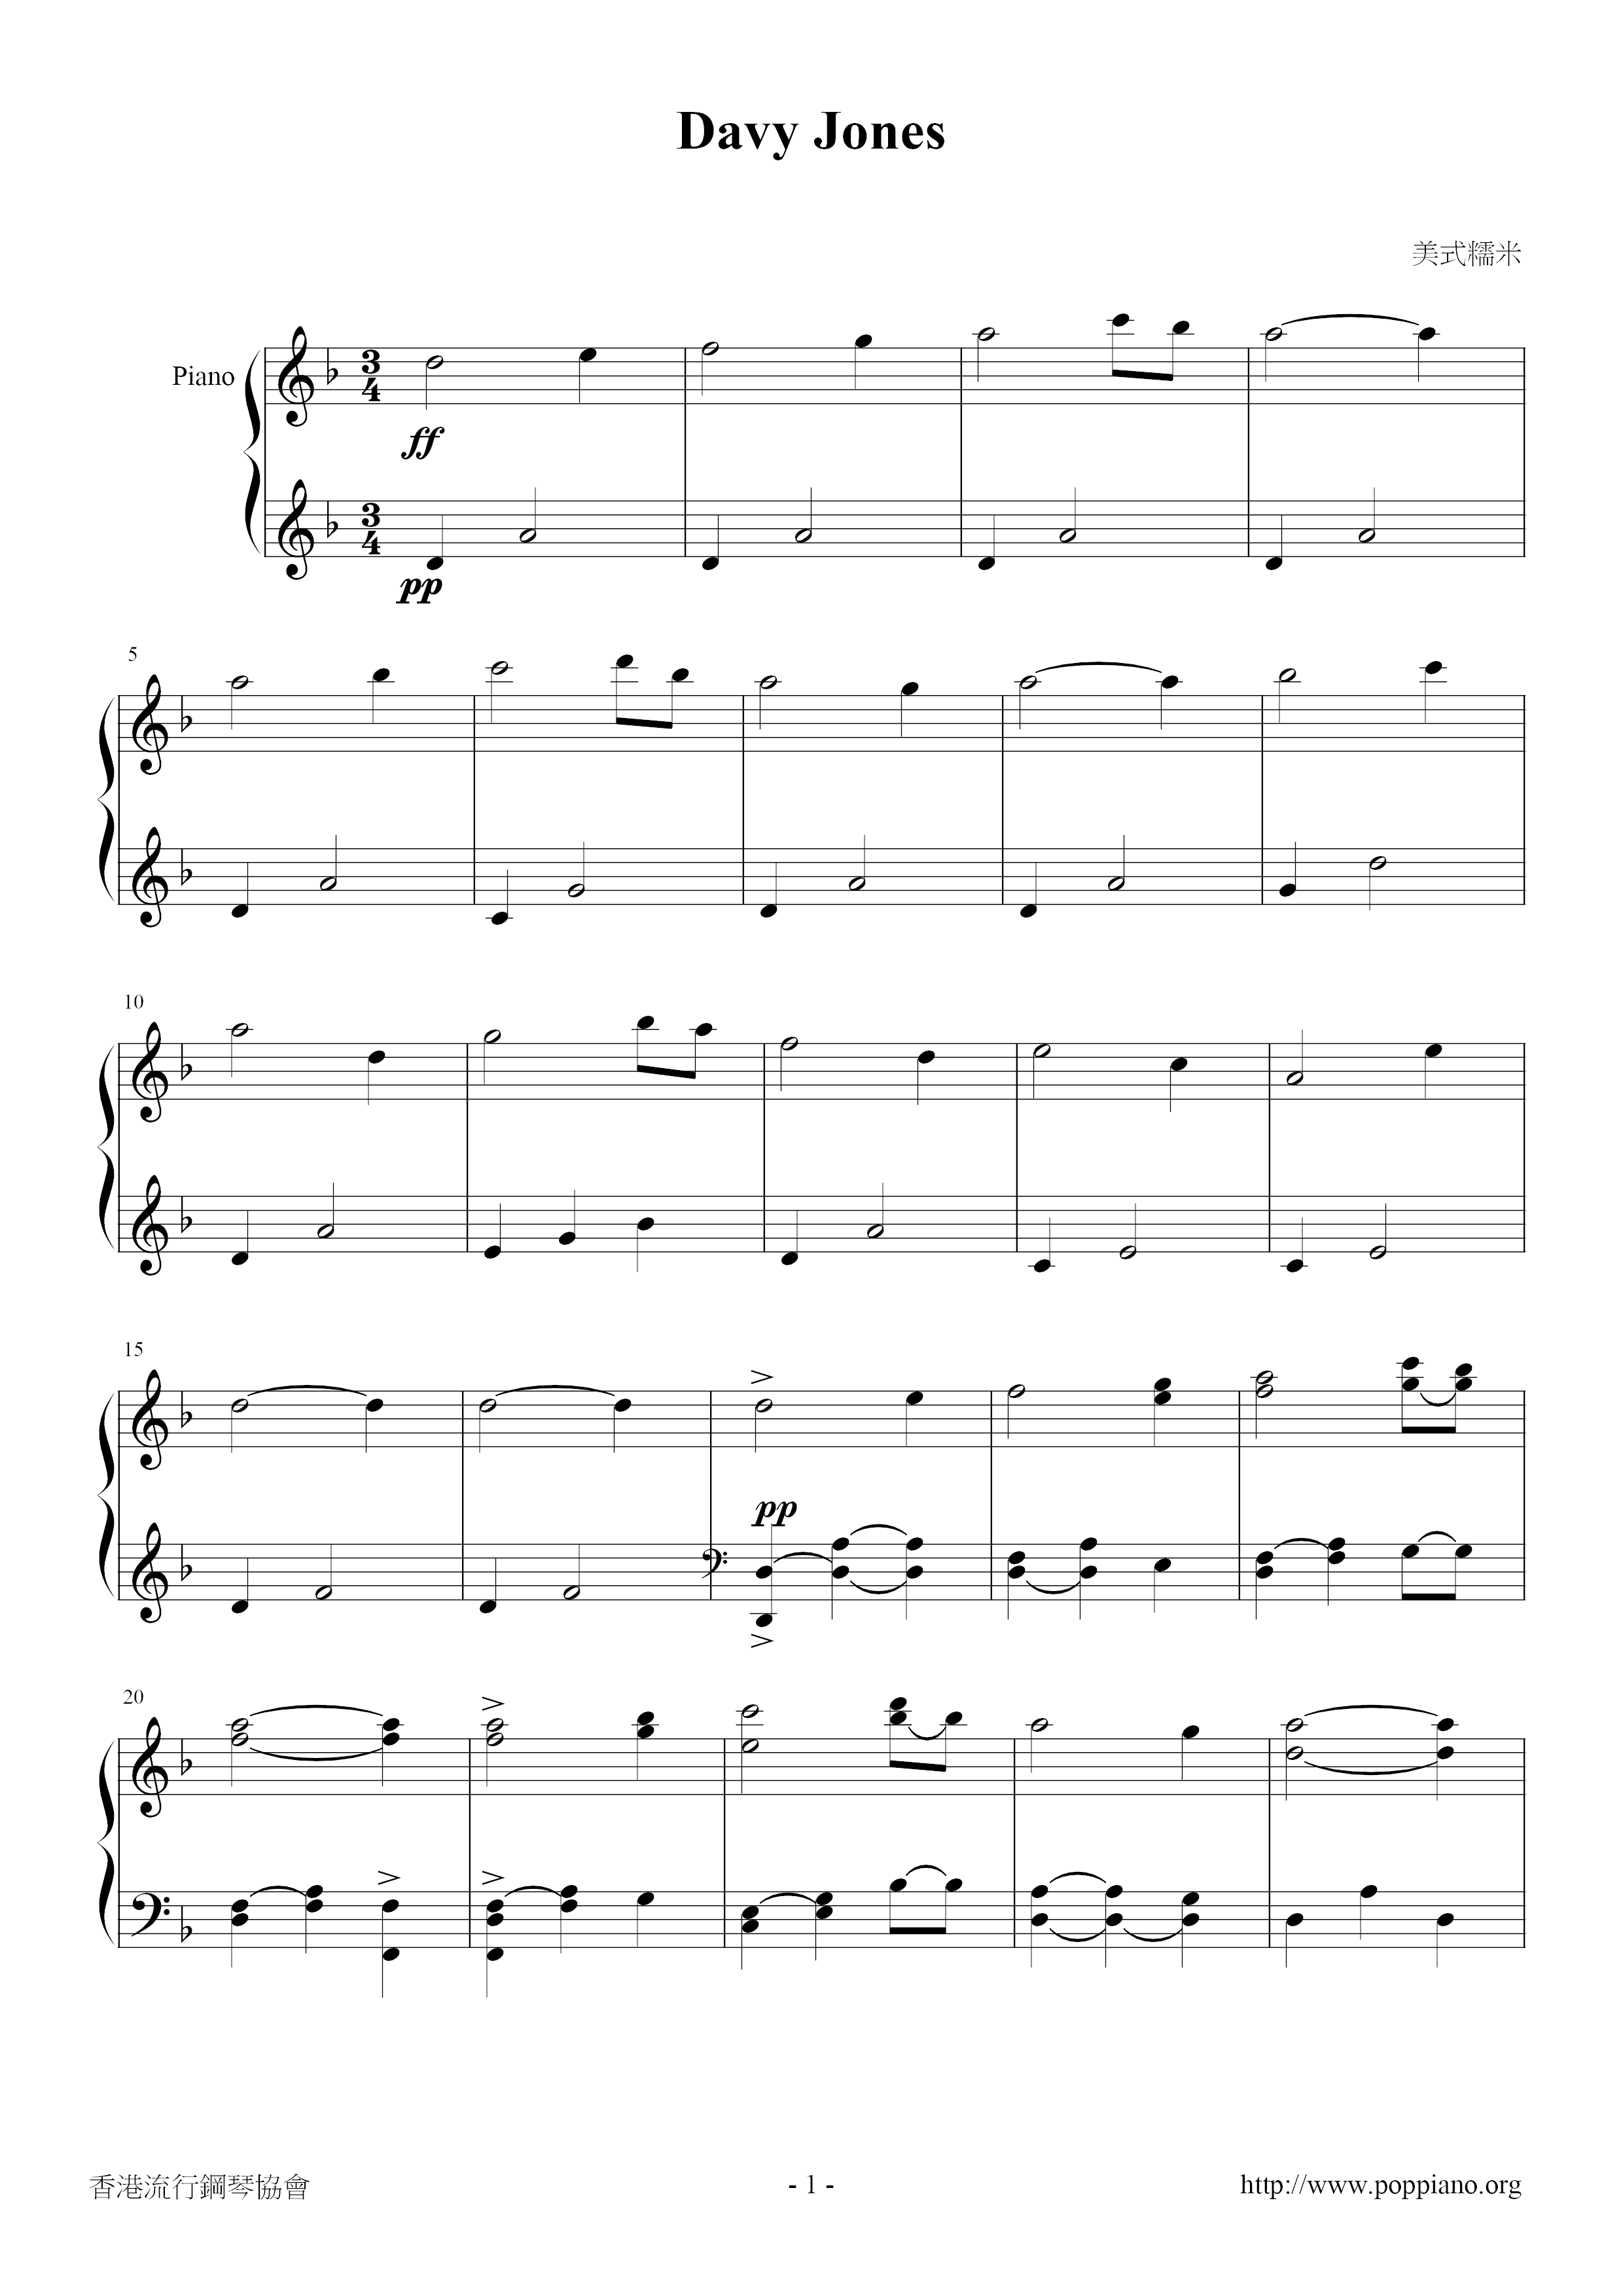 Davy Jones Score